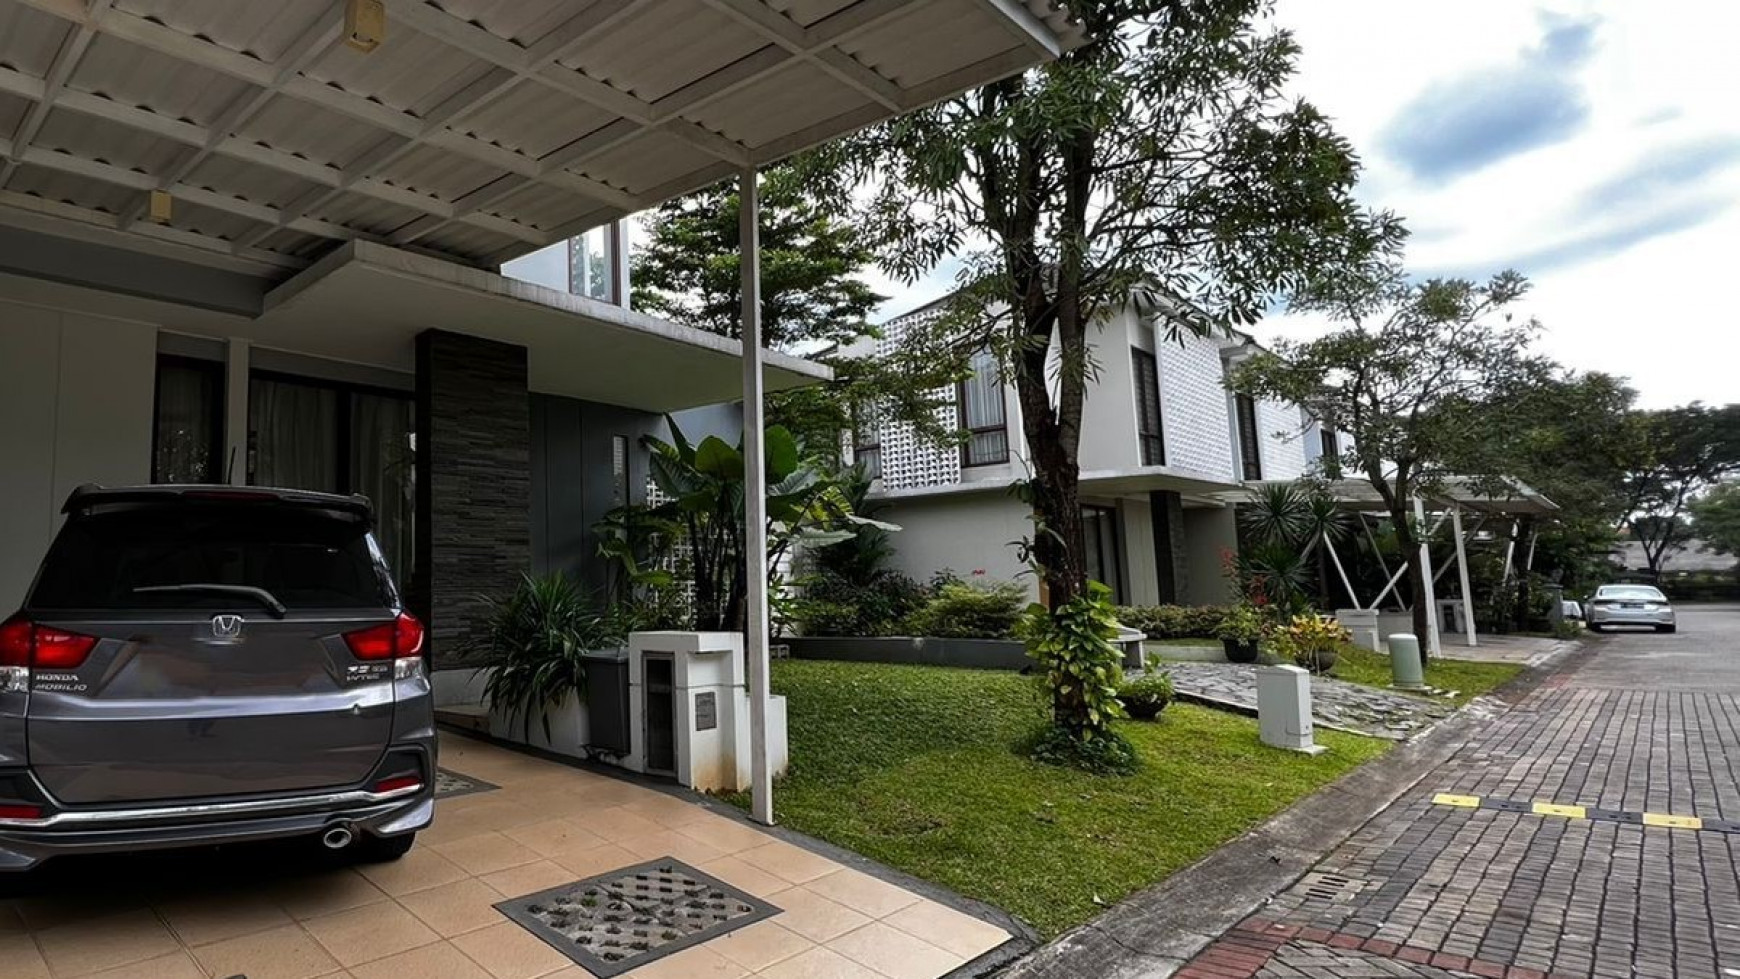 Rumah bagus minimalis siap huni, Bintaro Jaya *RWCG/2022/05/0011-JOH